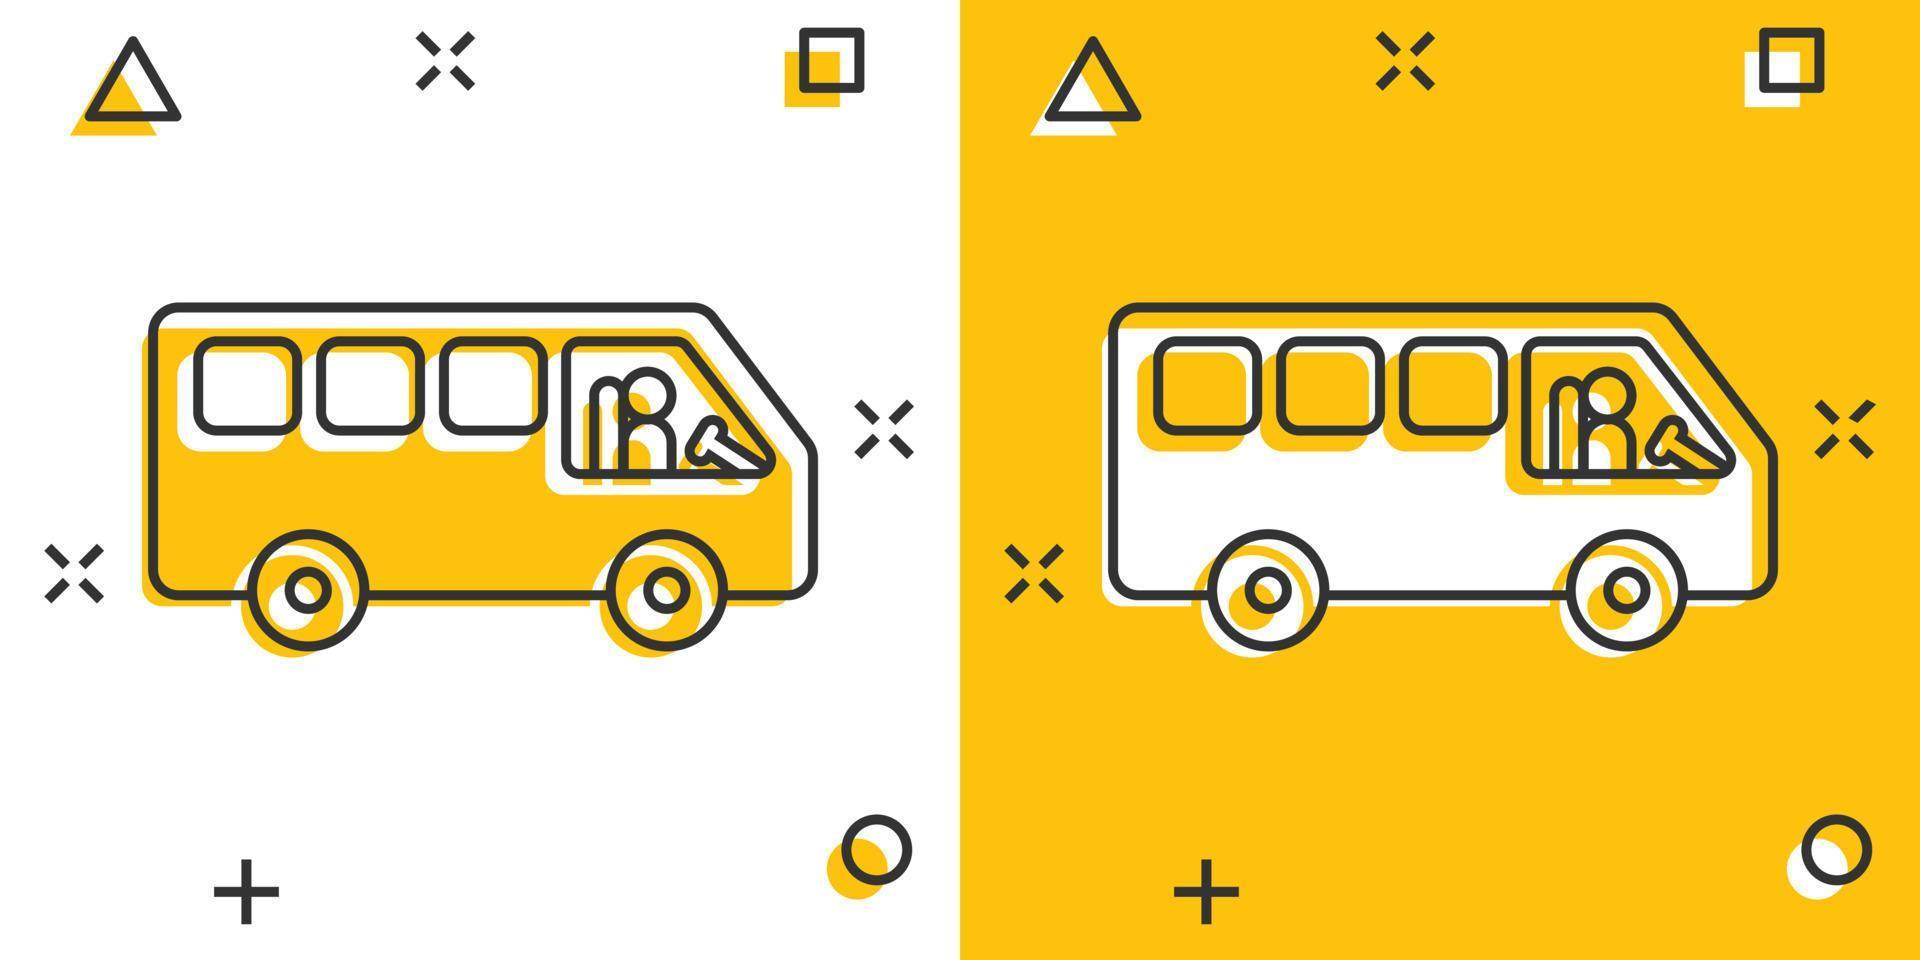 icône de bus dans le style comique. illustration vectorielle de dessin animé d'entraîneur sur fond blanc isolé. concept d'entreprise d'effet d'éclaboussure de véhicule autobus. vecteur